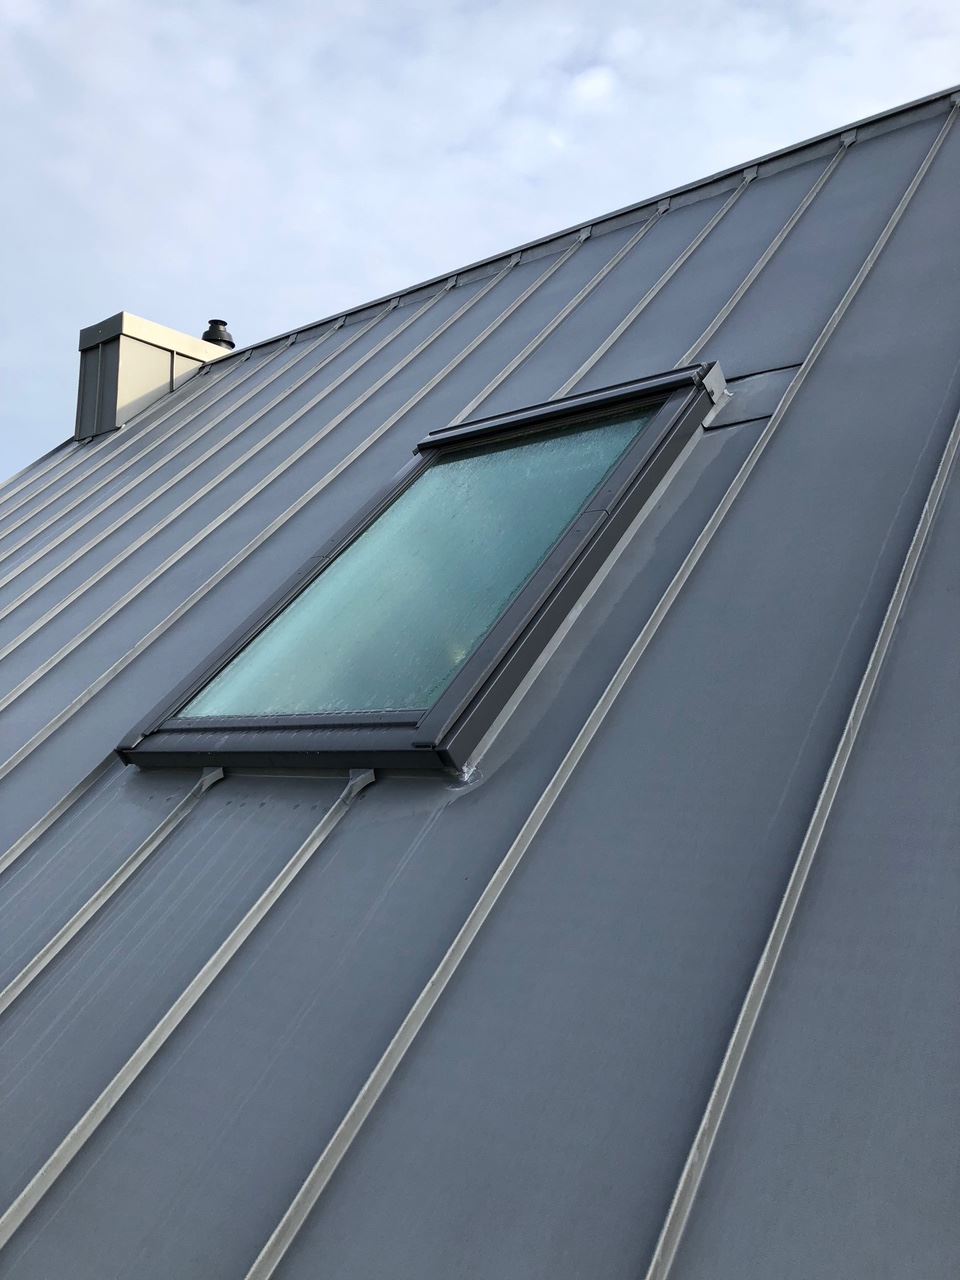 Couverture ZINC gris - Breizh toiture a Landaul - Morbihan 56